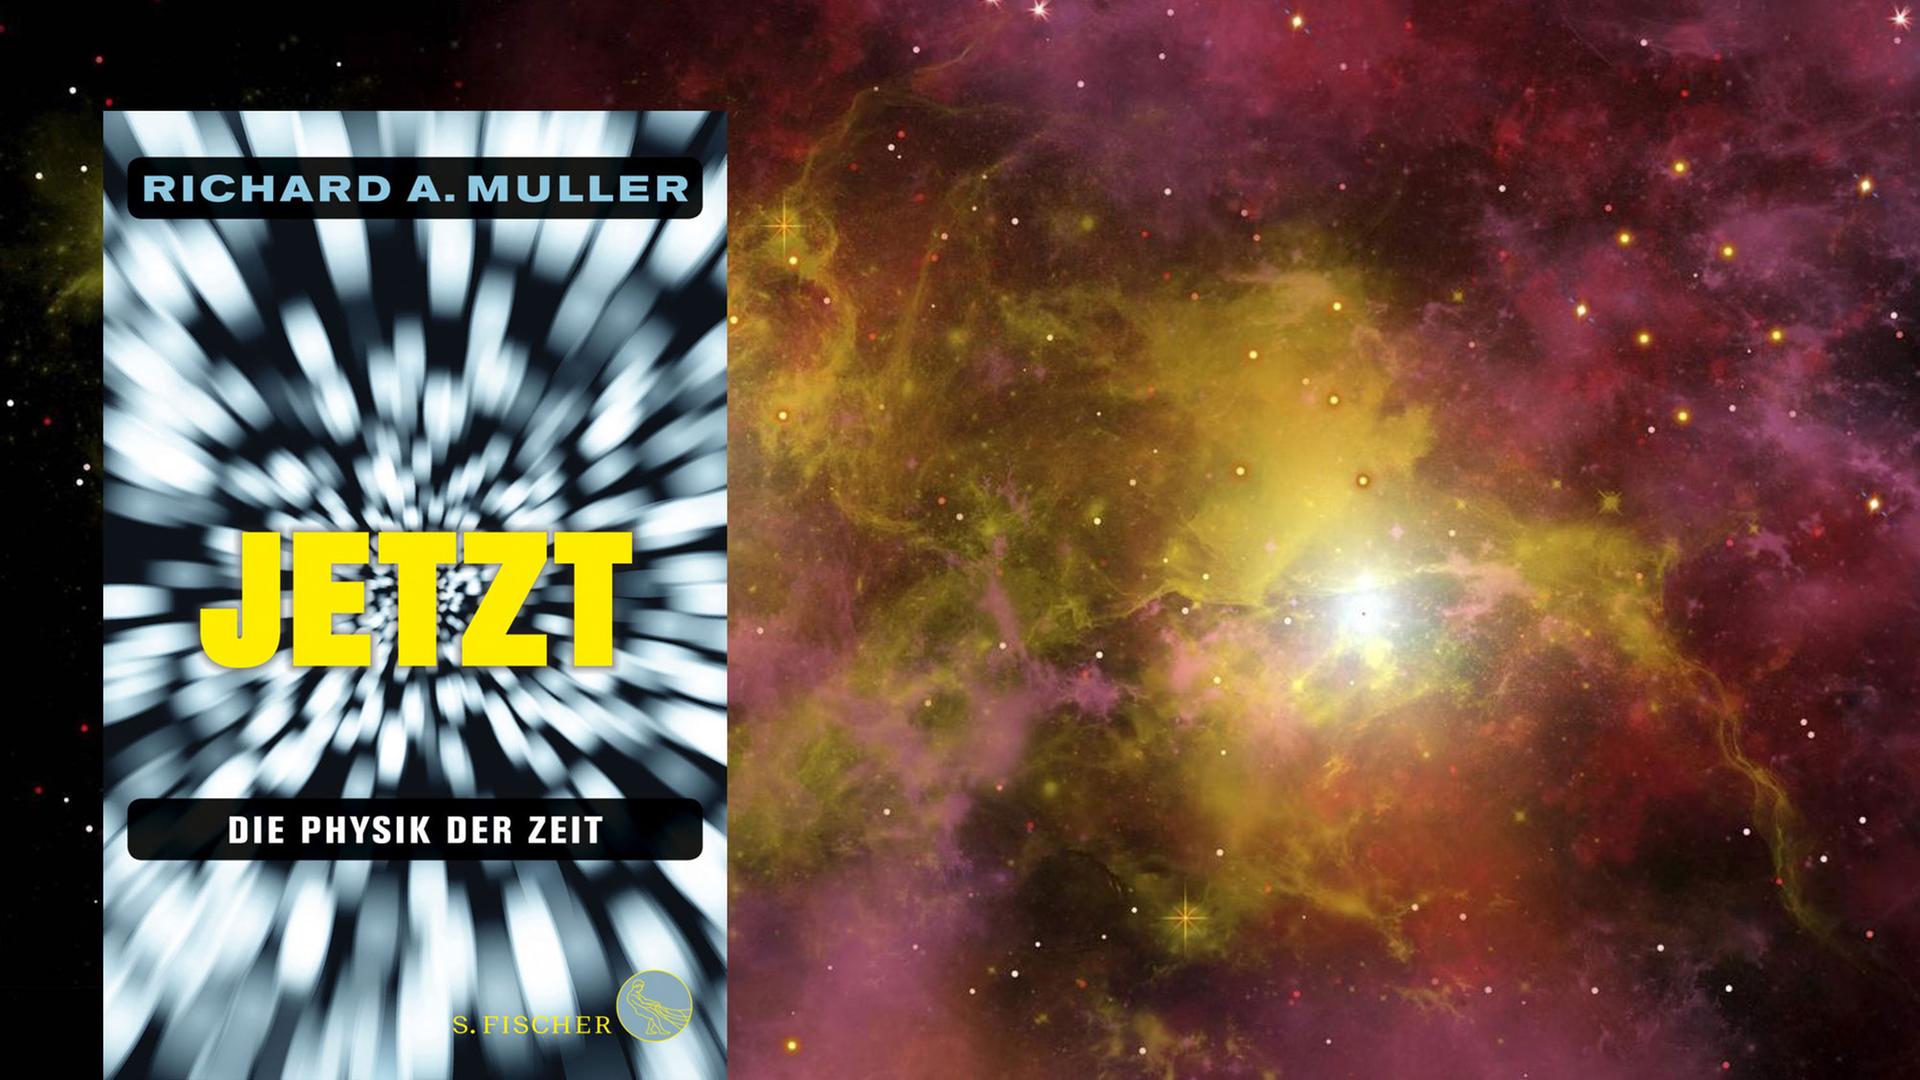 Buchcover "Die Physik der Zeit" von Richard Muller, im Hintergrund: Zwei Sterne leuchten aus einem Sternennebel in einer fernen Galaxie.